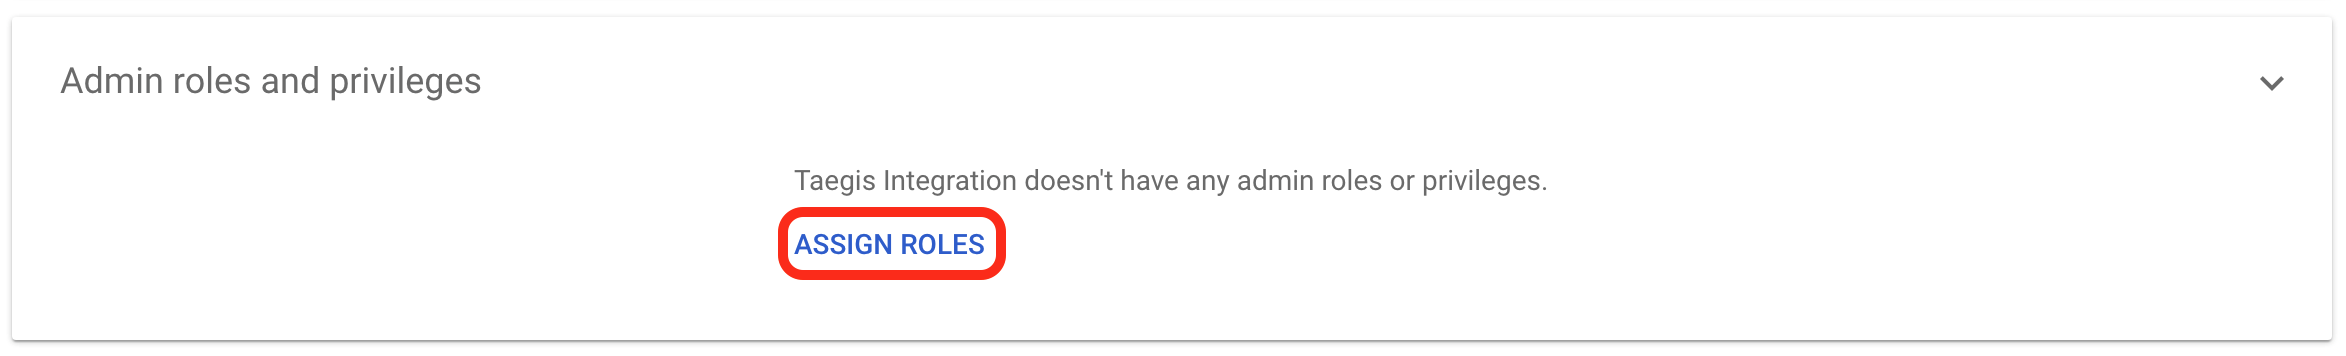 Google Add Admin Role